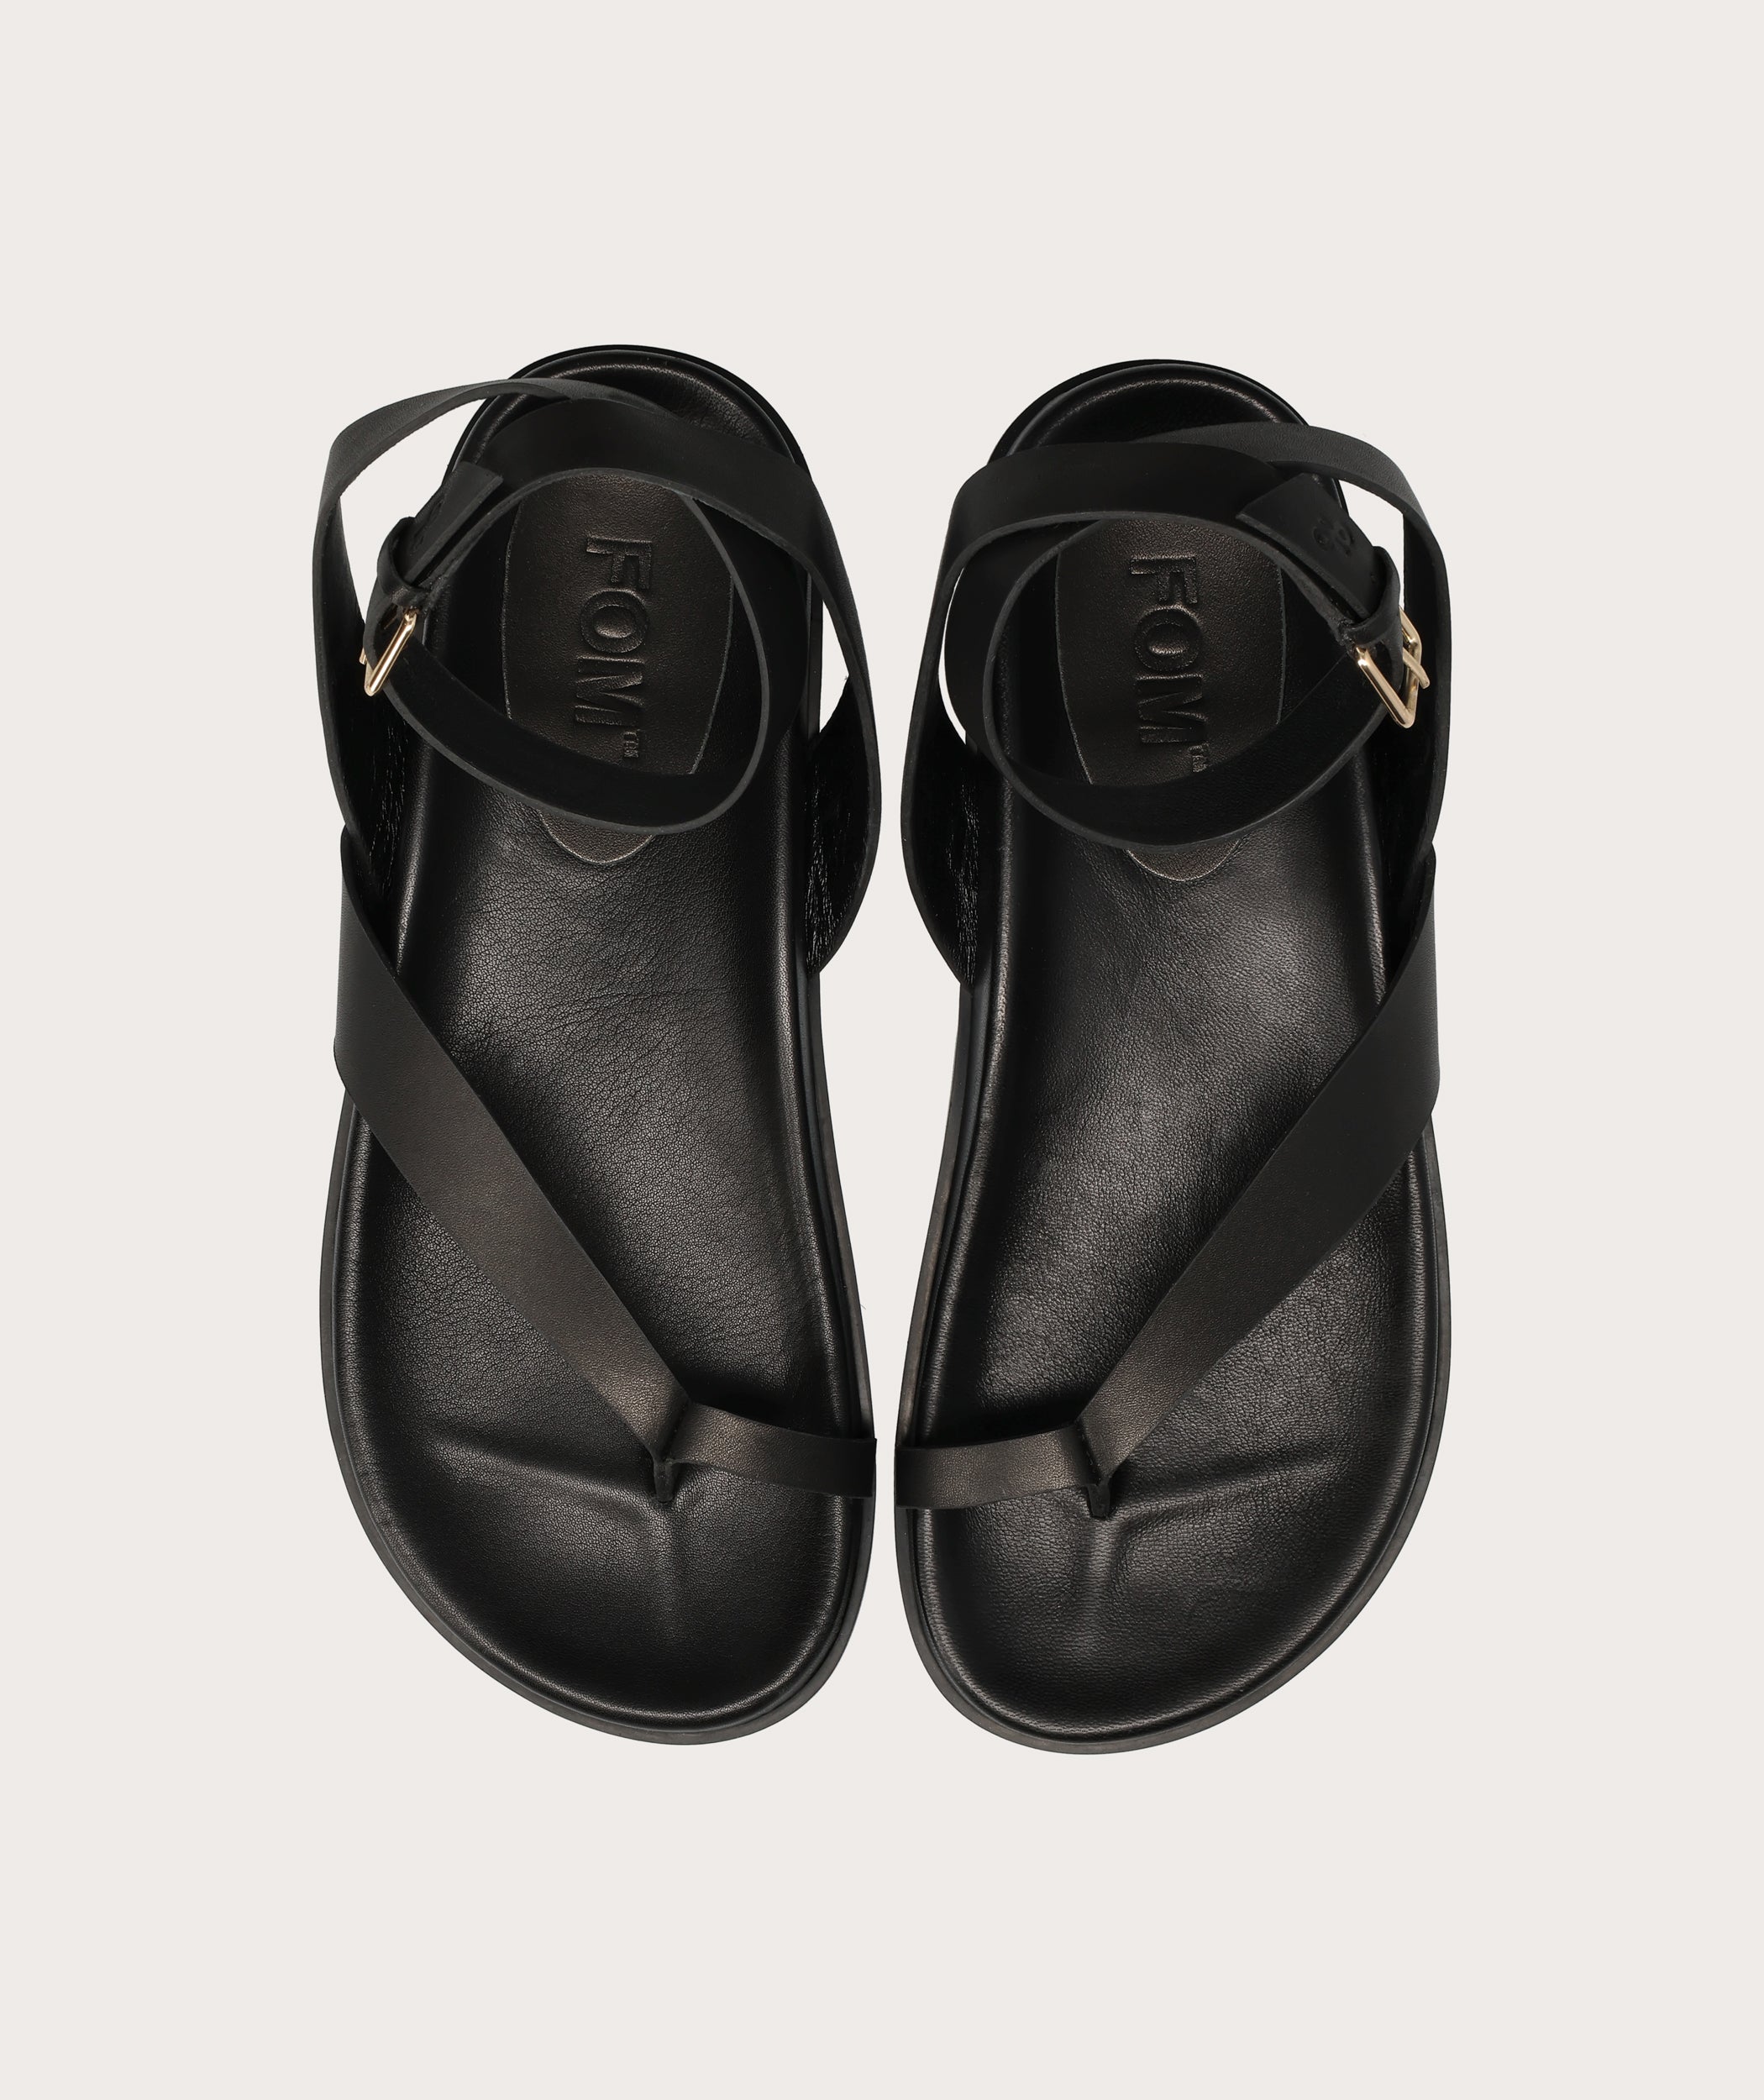 Ladies Toe Loop Sandal - Black